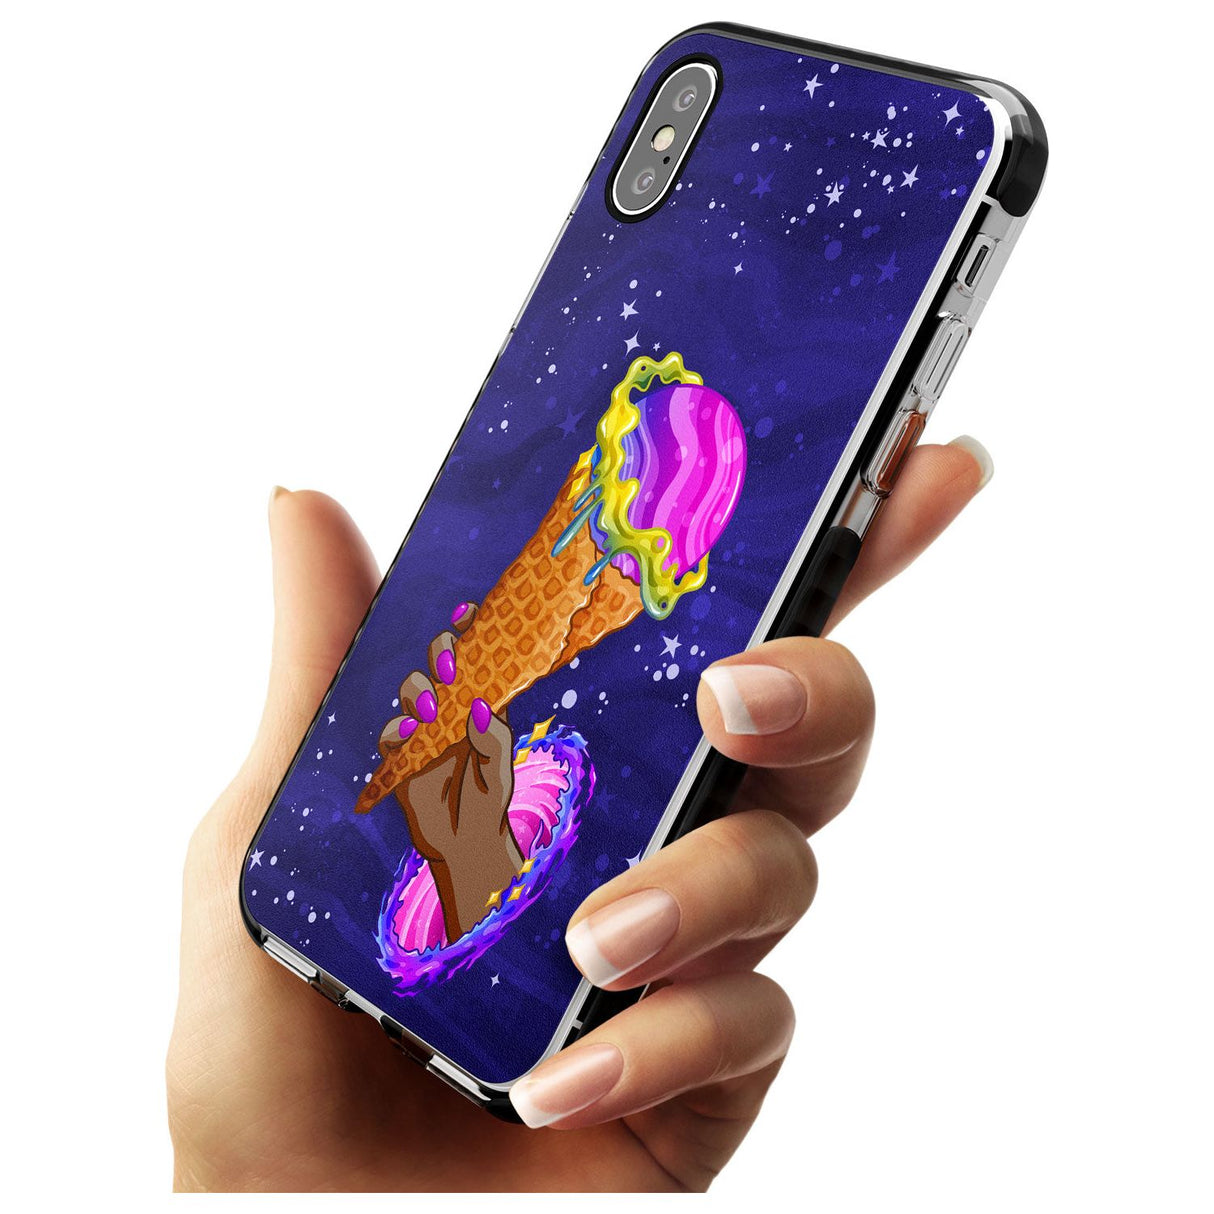 Interdimensional Ice Cream Black Impact Phone Case for iPhone X XS Max XR